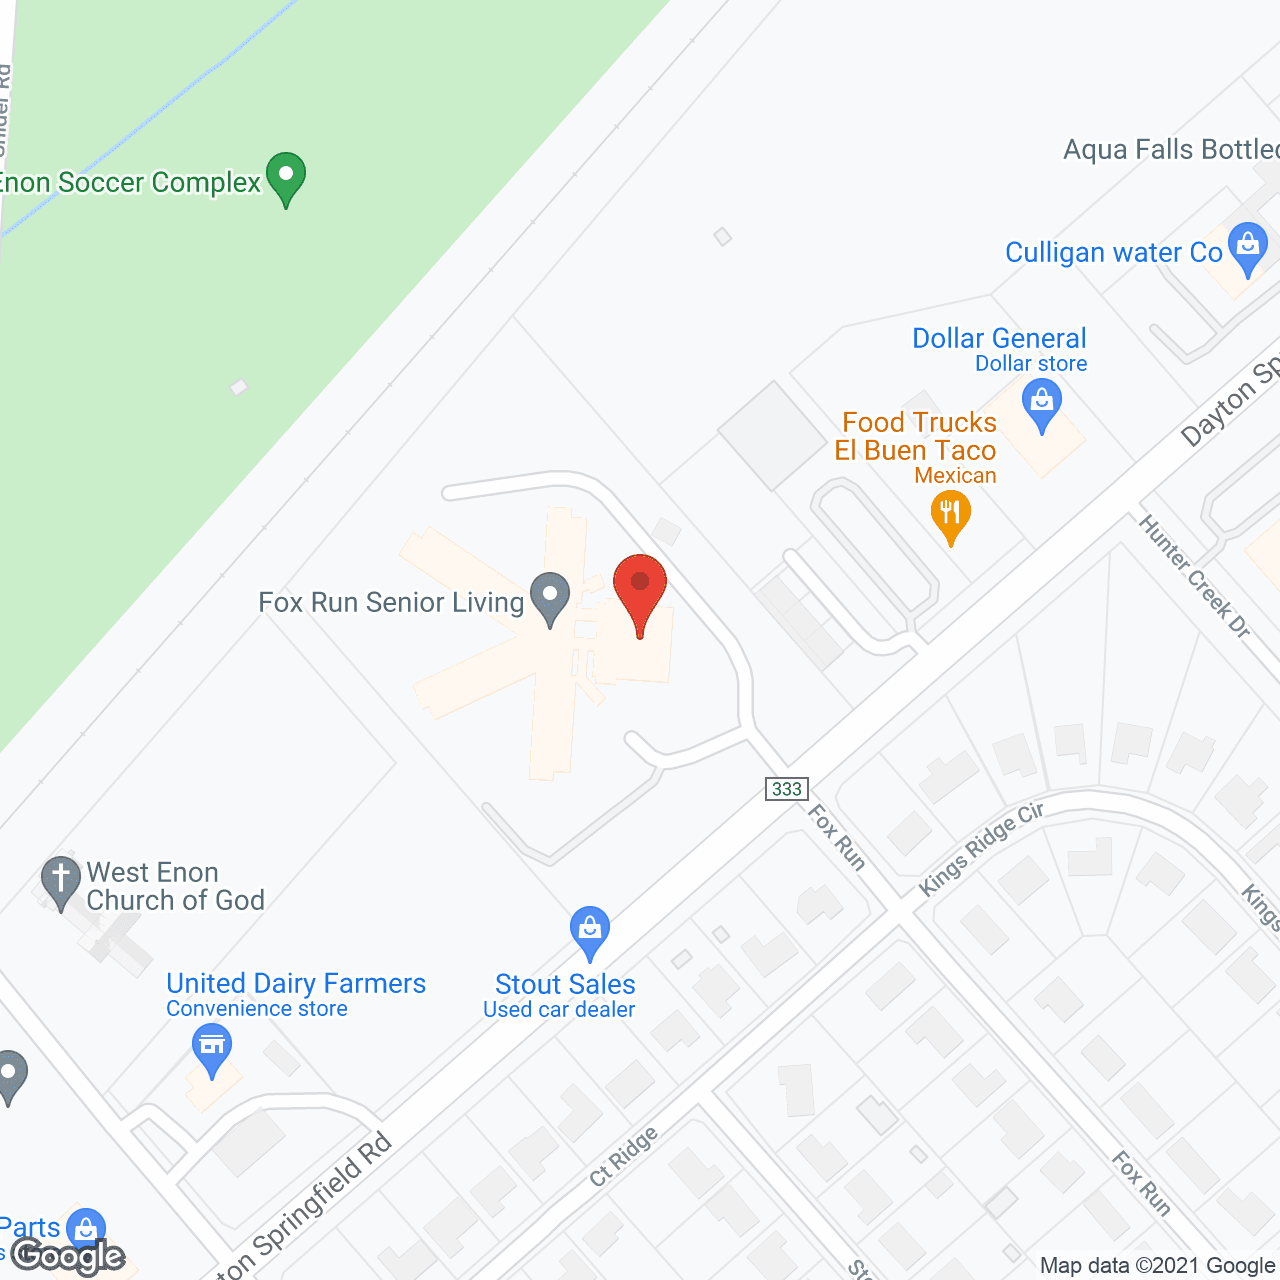 The Inn at Fox Run in google map